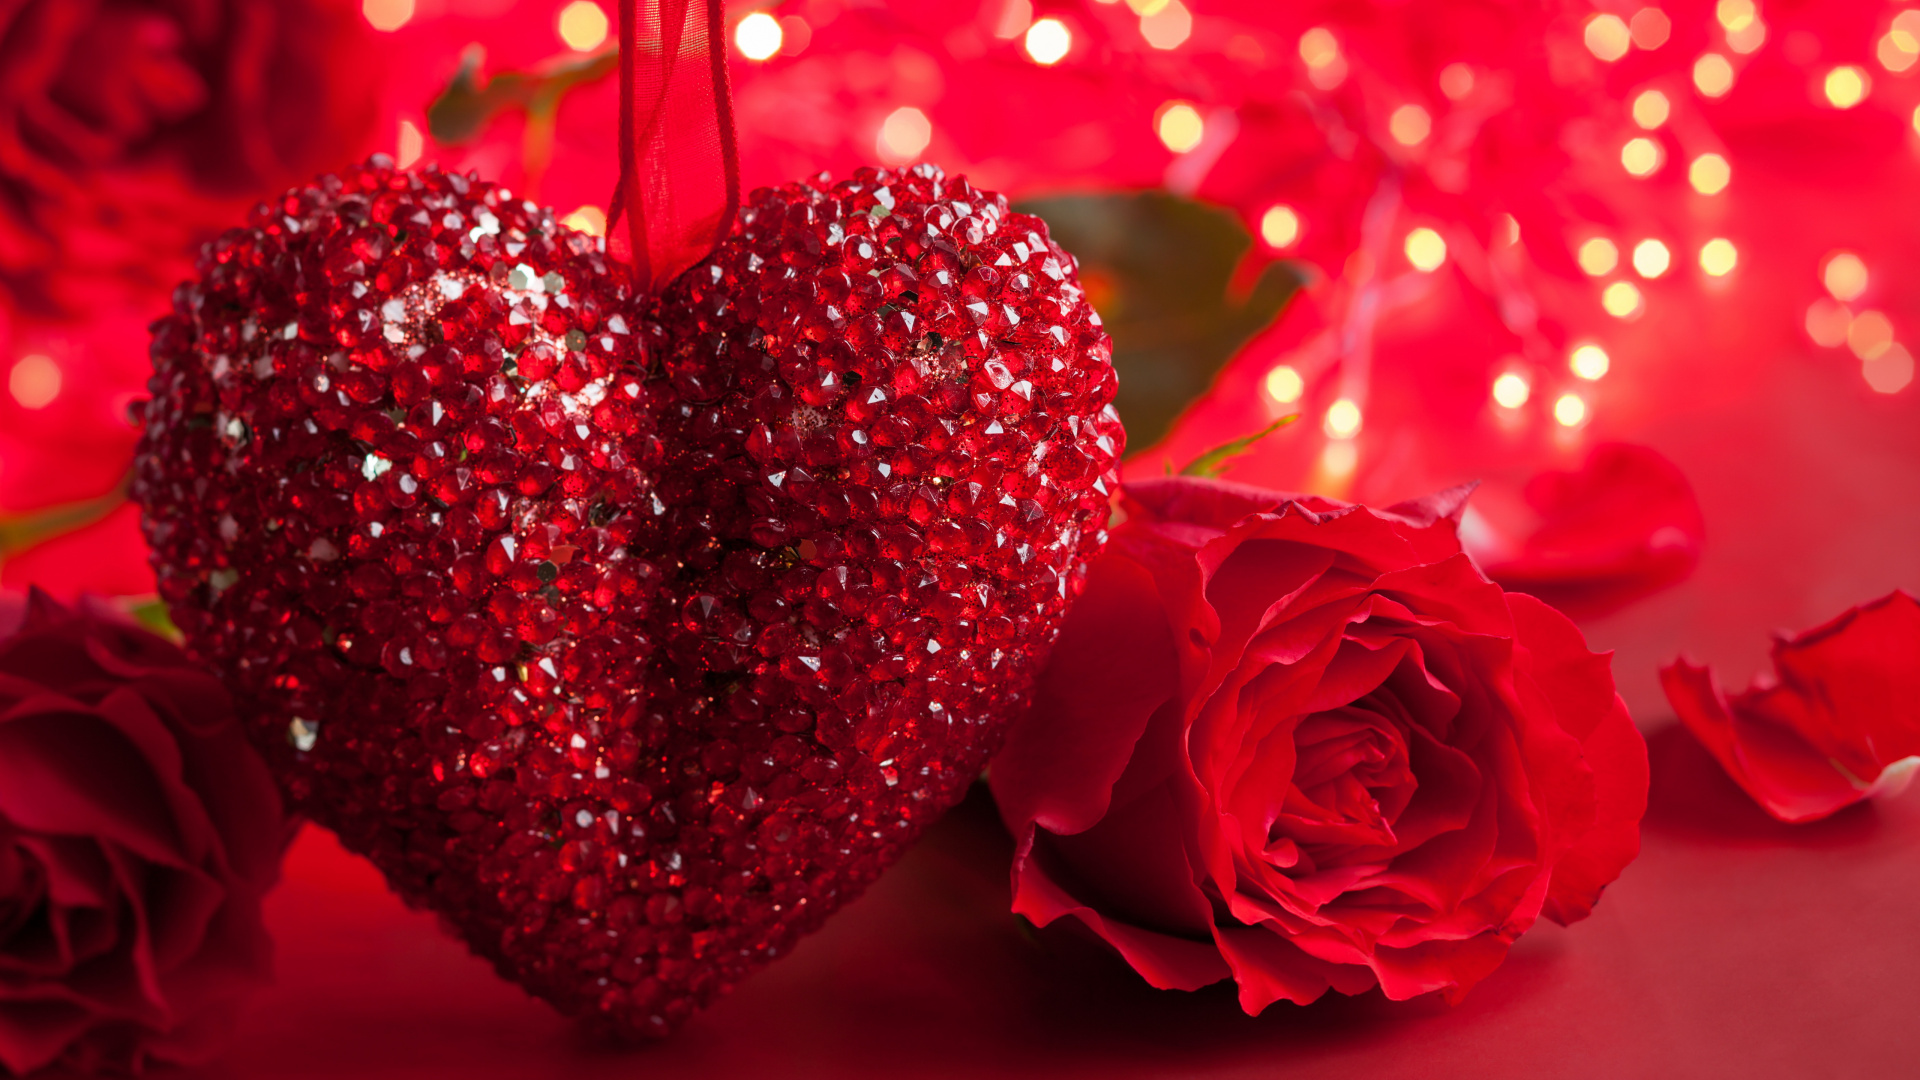 浪漫, 心脏, 红色的, 爱情, 友谊 壁纸 1920x1080 允许